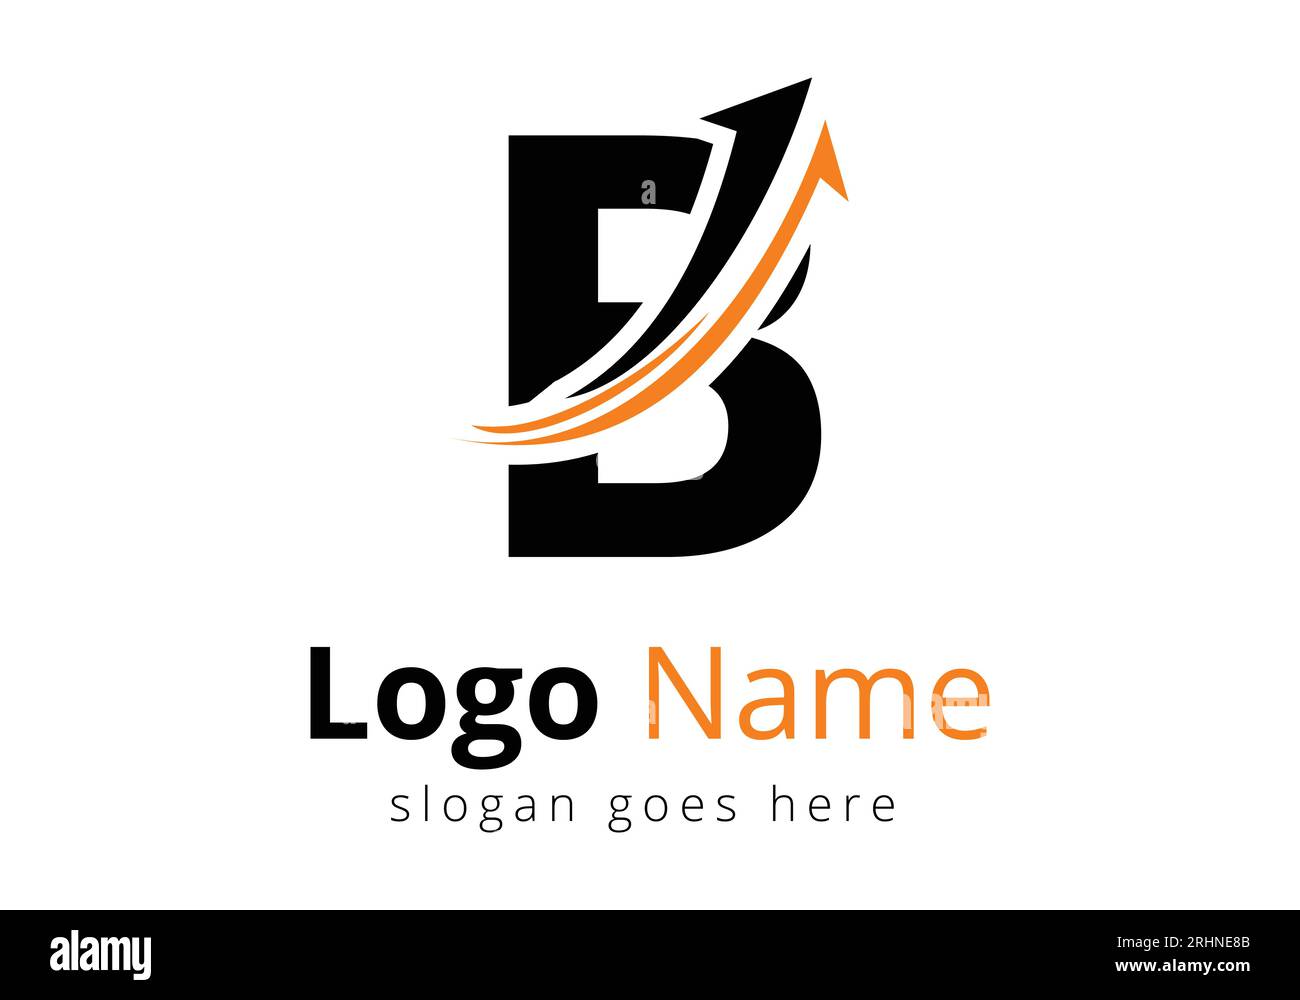 Logo Finance avec lettre B. Concept de logo financier ou de réussite. Logo pour l'entreprise comptable et l'identité de l'entreprise Illustration de Vecteur